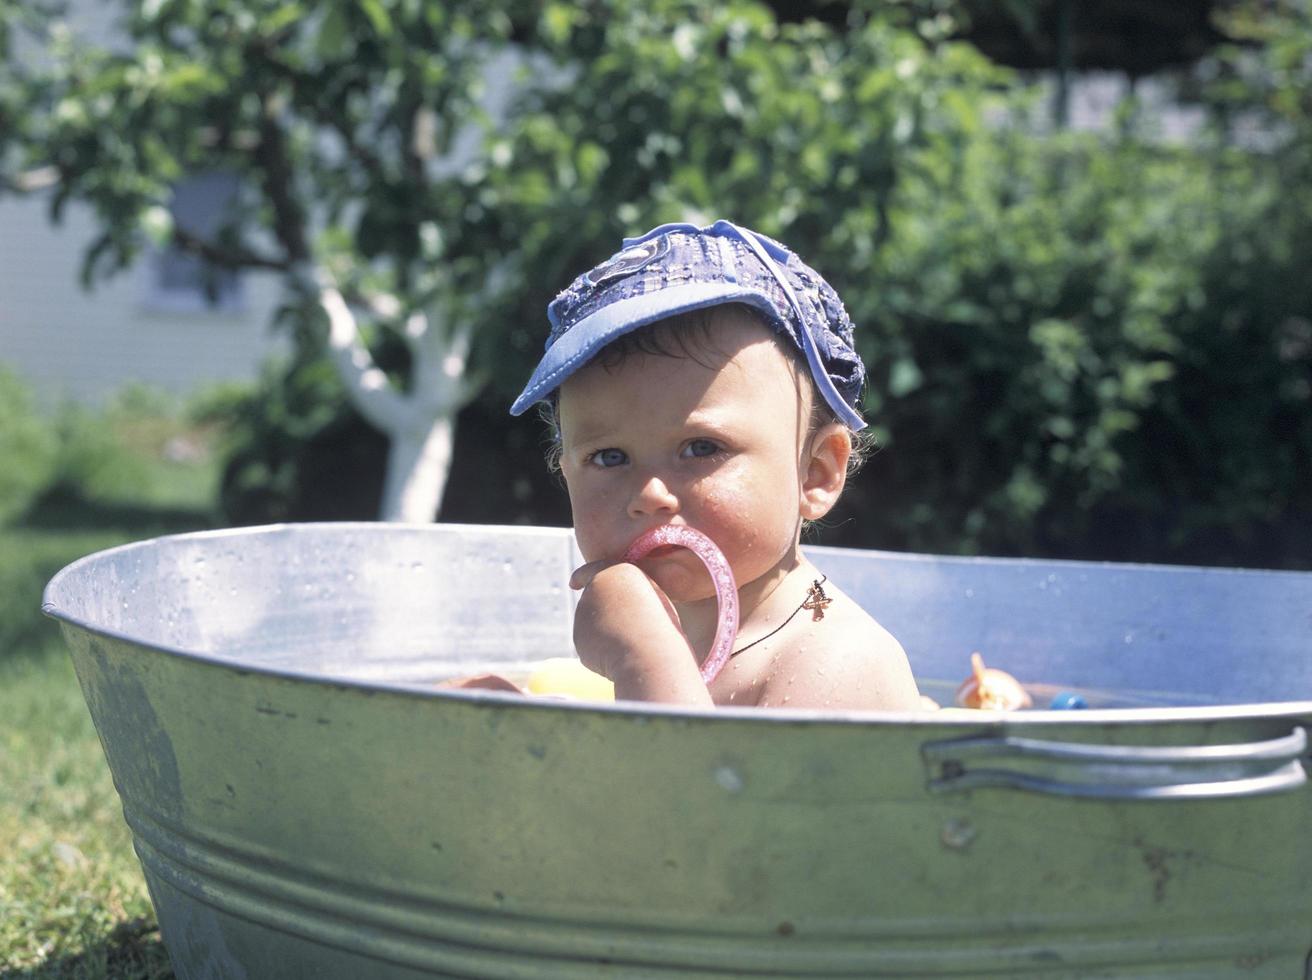 mooie babyjongen in kinderbad poseren fotograaf foto